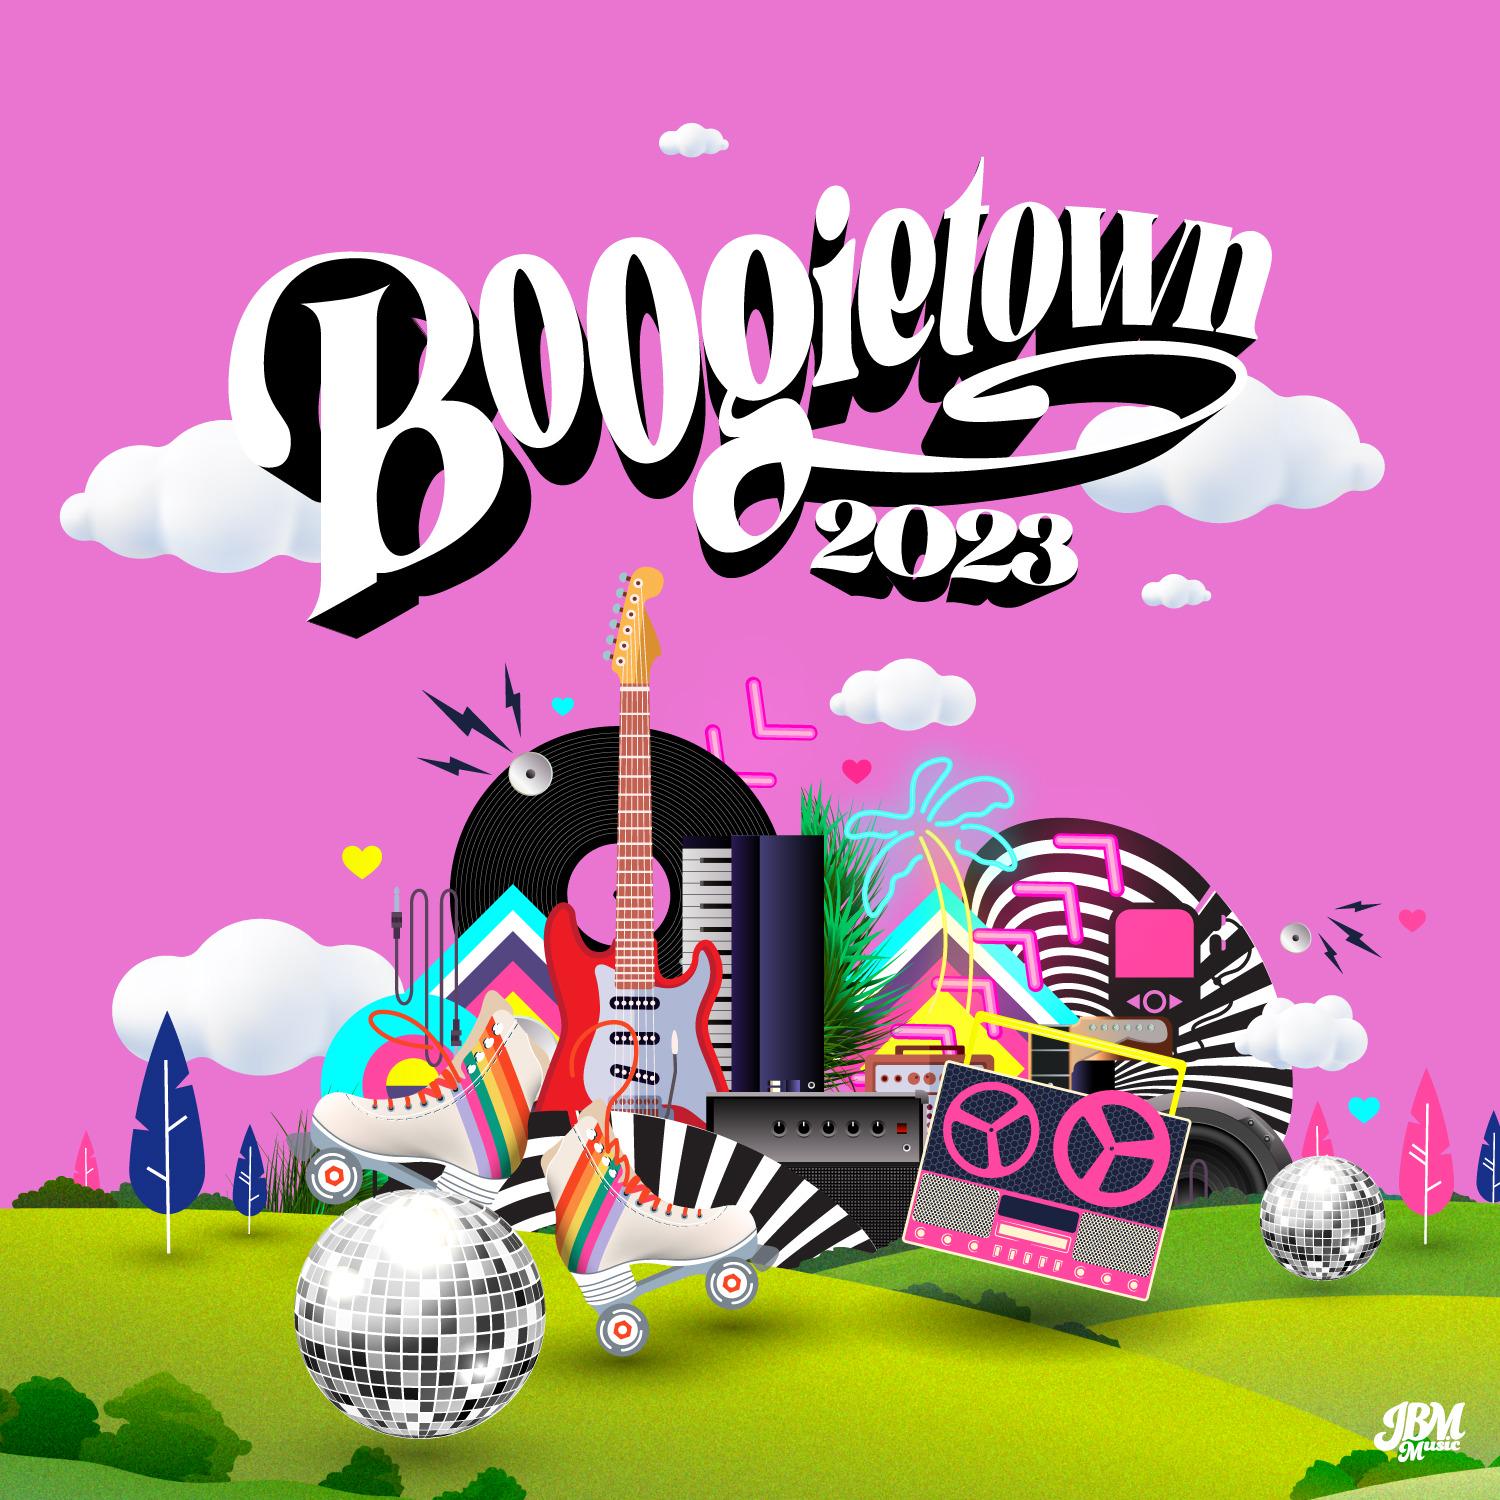 Boogietown